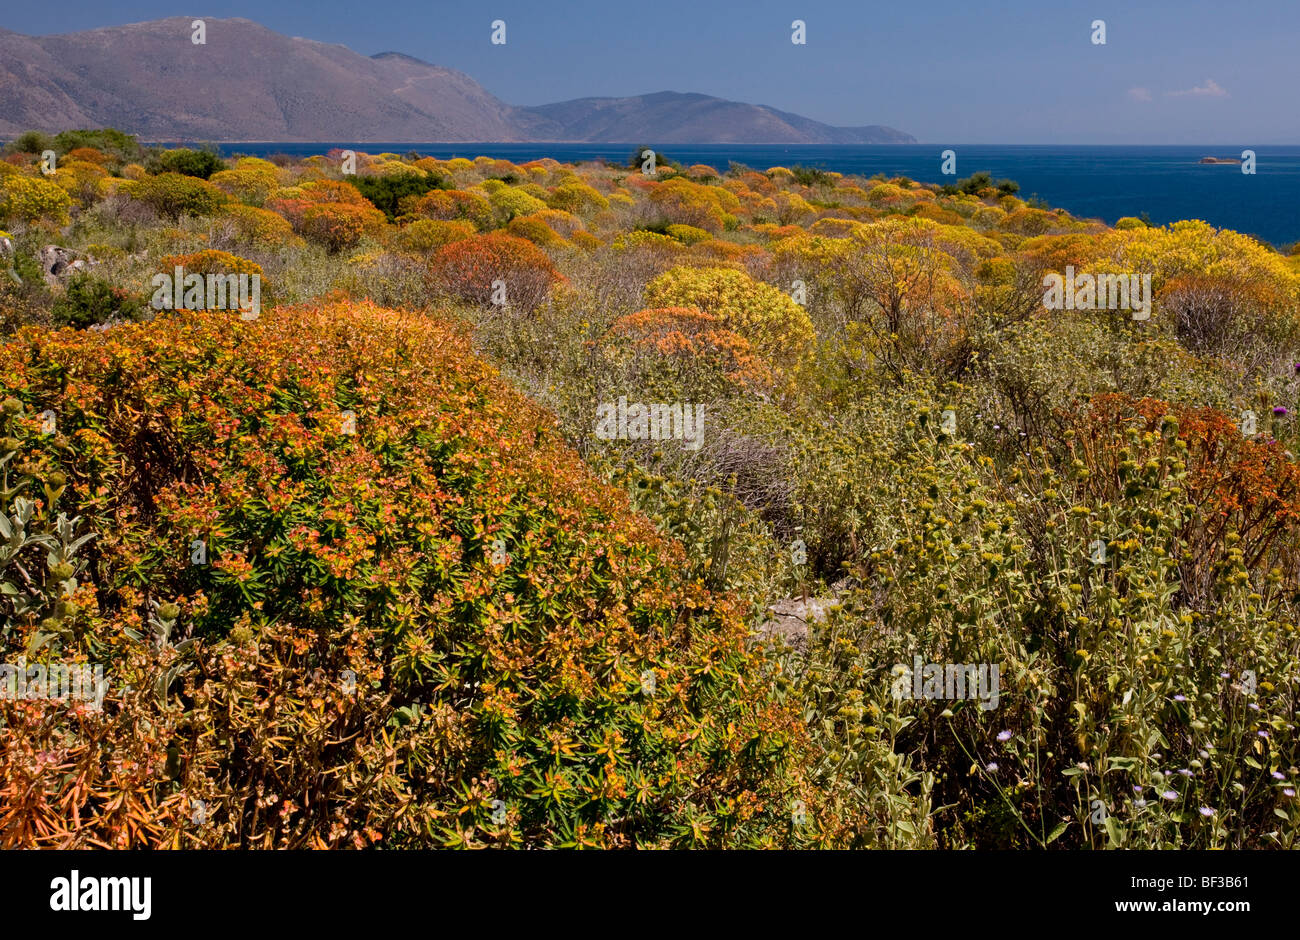 Arbre généalogique de masse Spurge Euphorbia dendroides début à la couleur ; sur les rives du golfe de Corinthe (Grèce), Corinthe. Banque D'Images